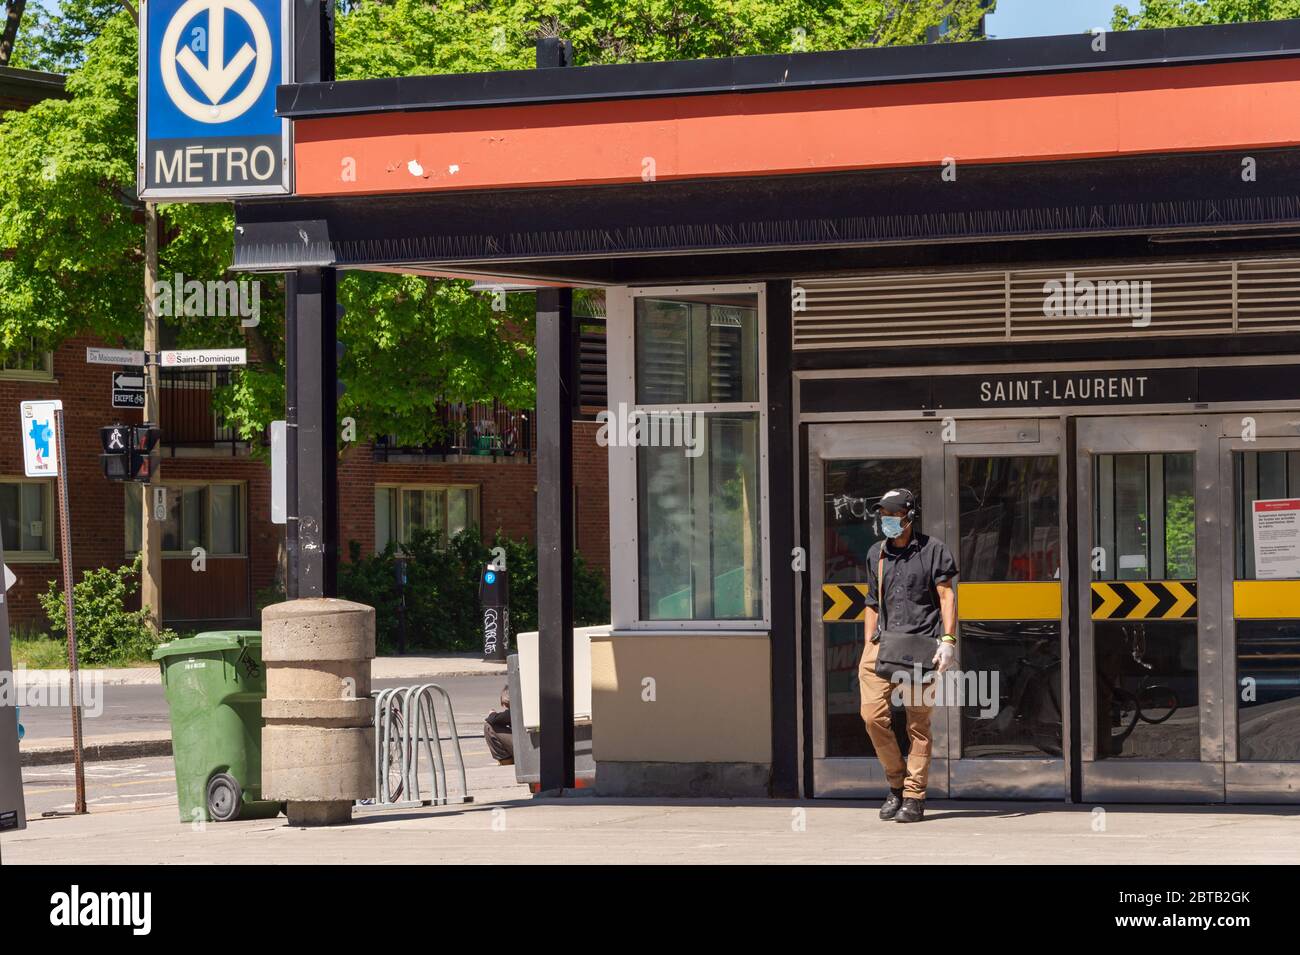 Montréal, CA - 23 mai 2020: Homme avec masque pour la protection contre COVID-19 sortant de la station de métro Saint Laurent Banque D'Images